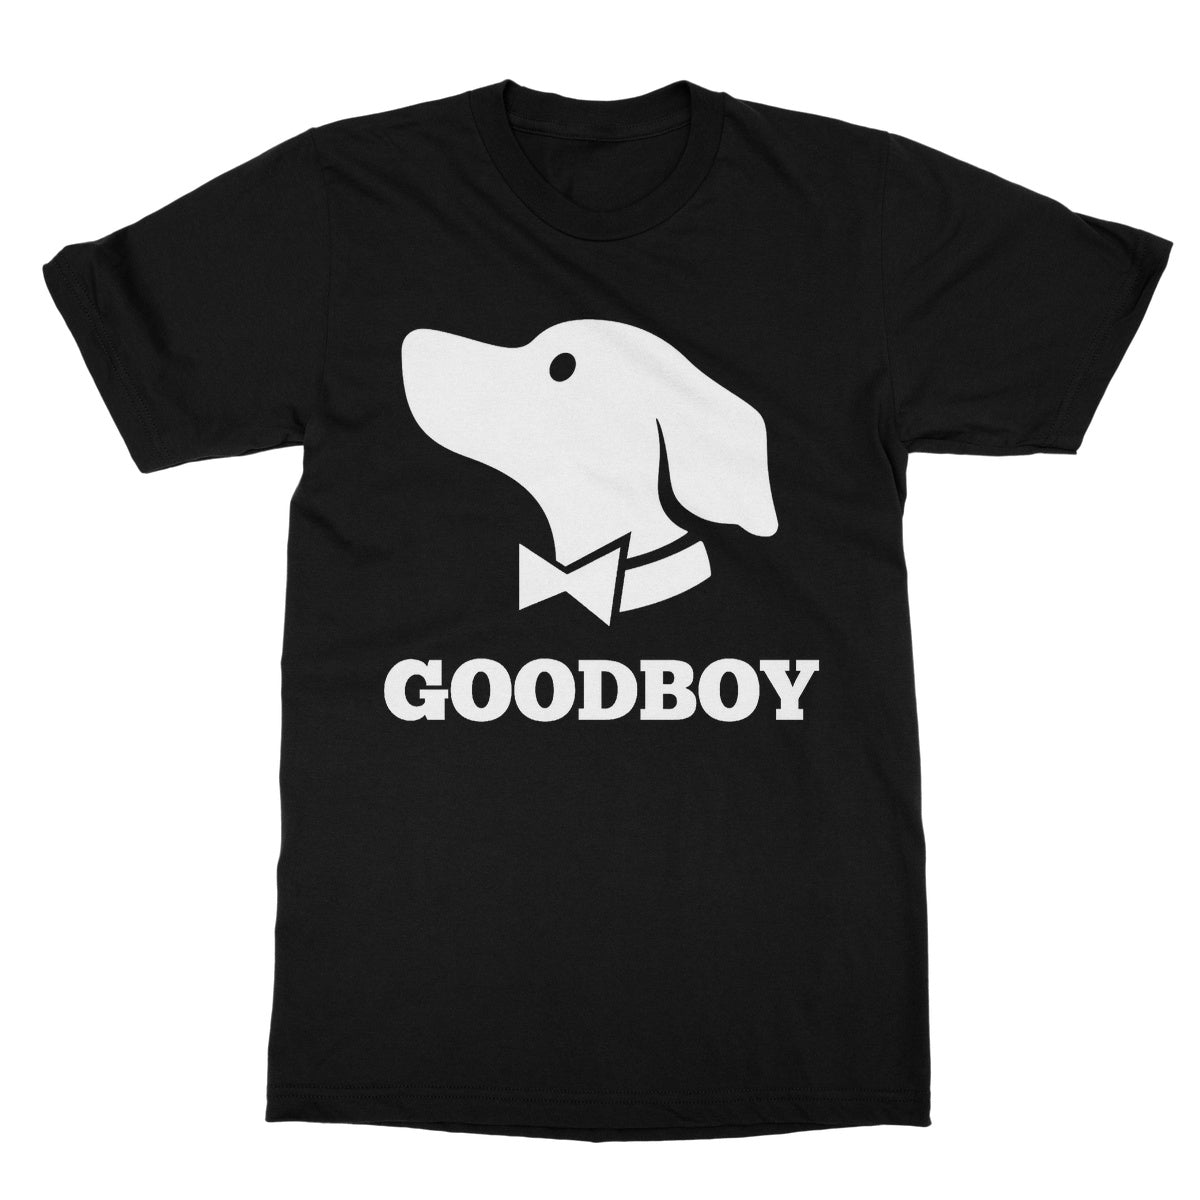 goodboy t shirt black